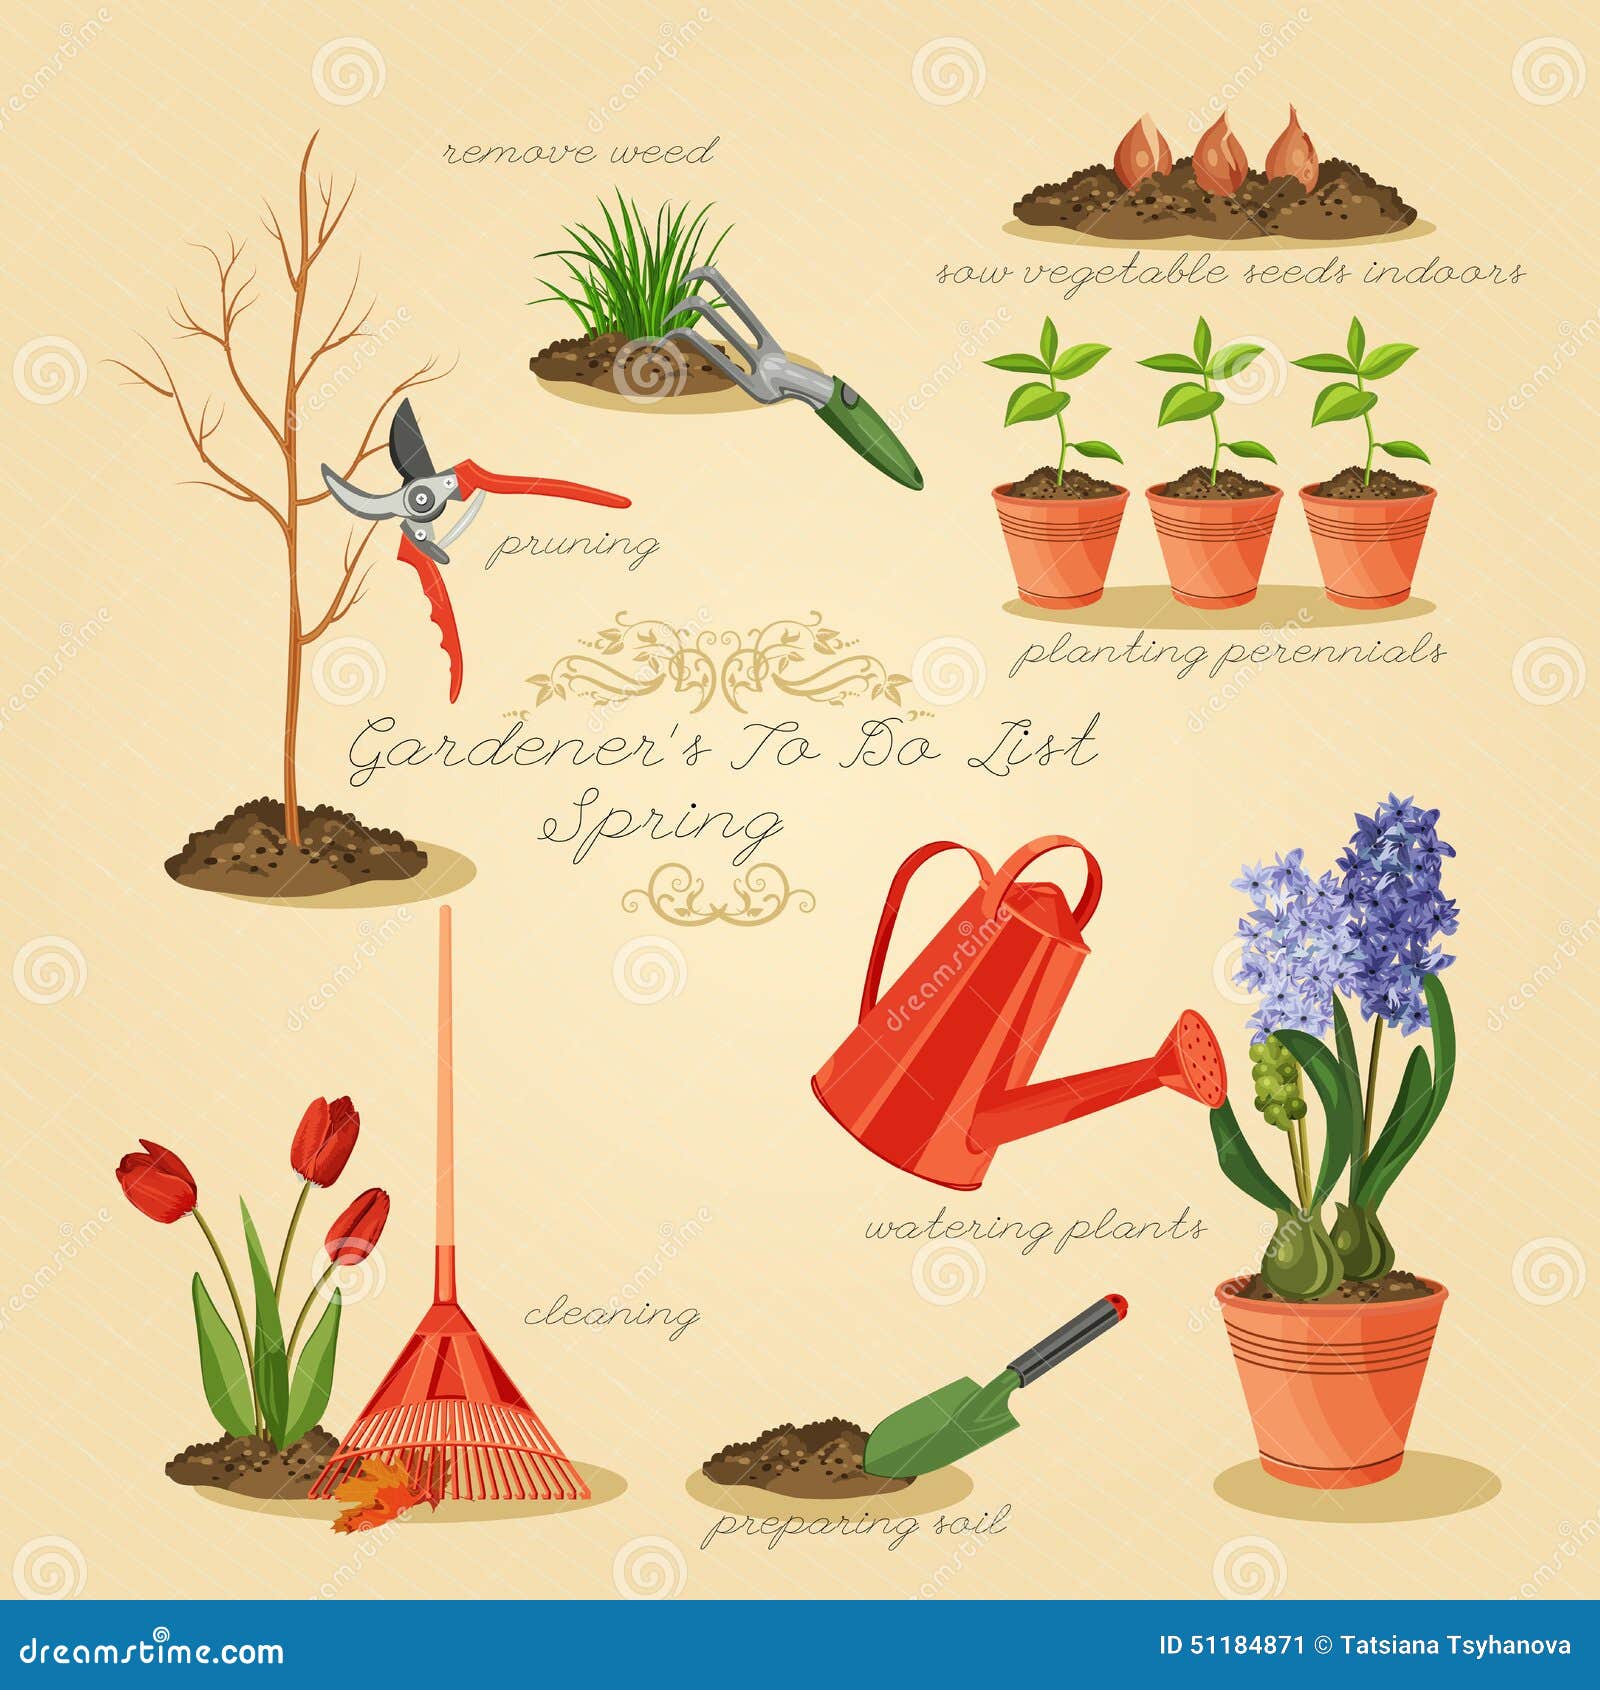 Spring Gardening To Do List Card Gardener Set Stock Vector